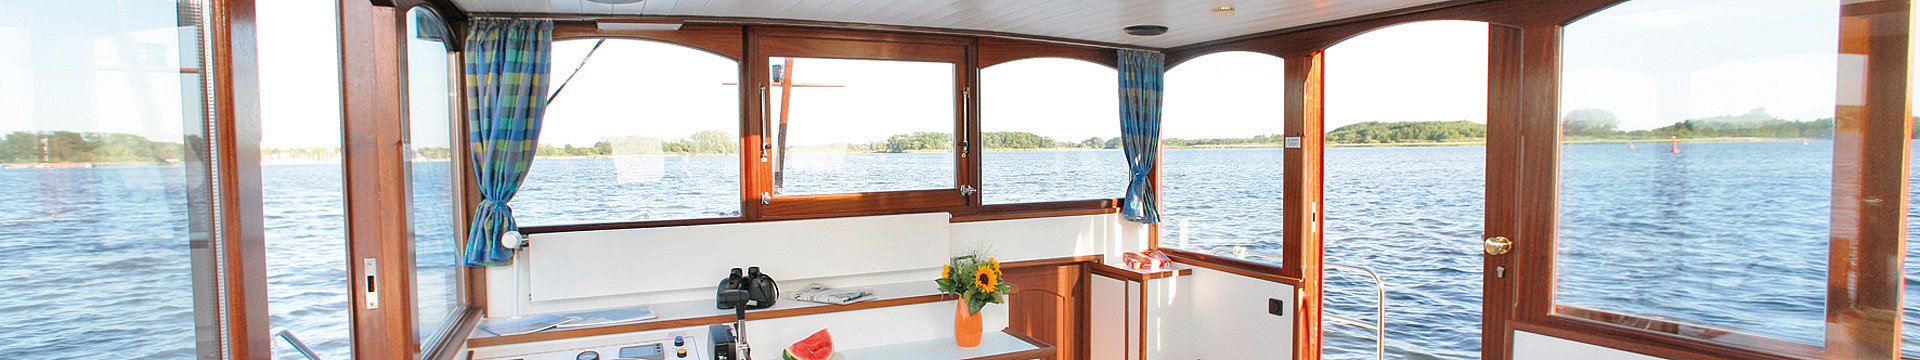 Viele Fenster im Salon eines Bootes garantieren freie Sicht rundherum auf das Wasser.